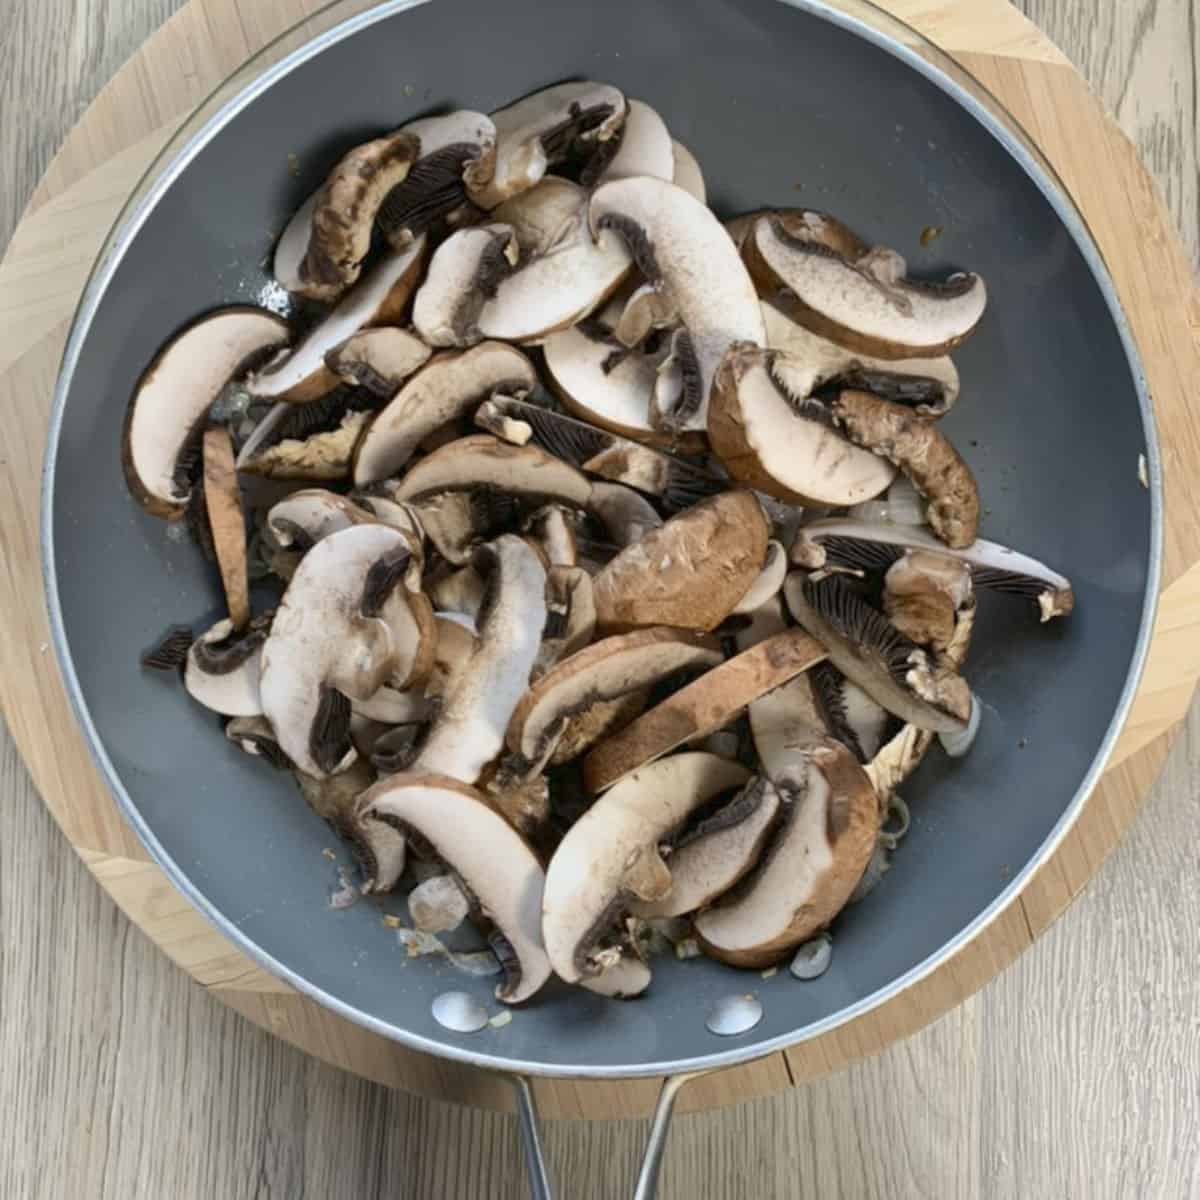 Sauté the mushrooms.